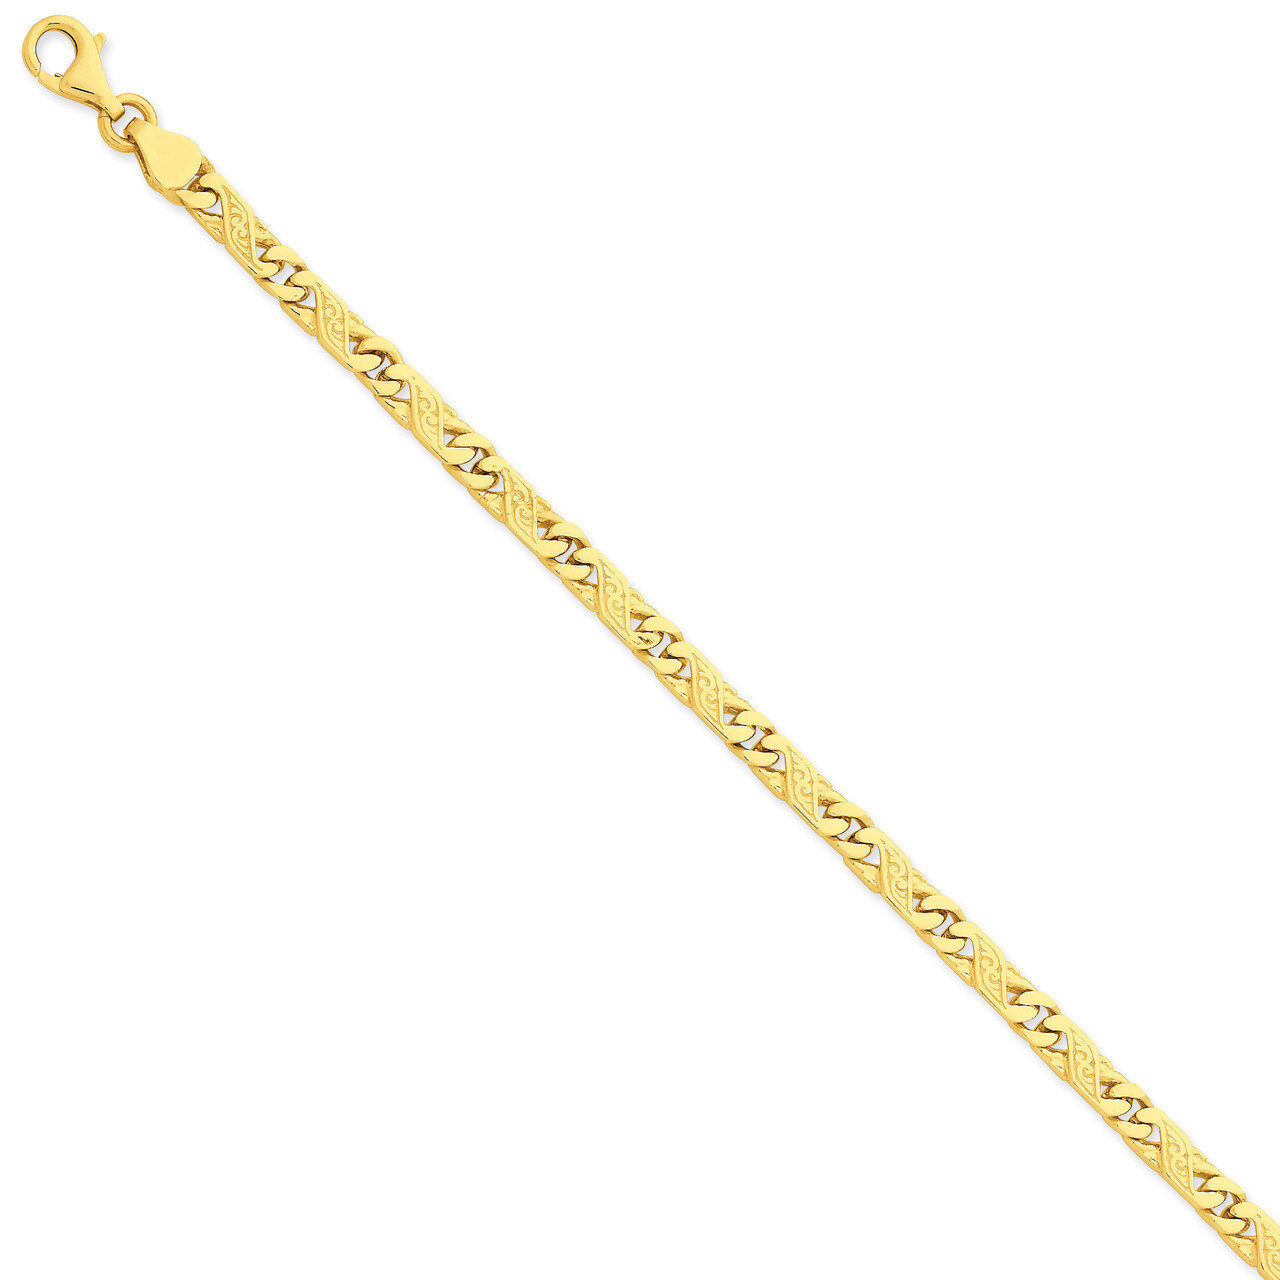 5mm Hand-polished Link Necklace 20 Inch 14k Gold LK161-20